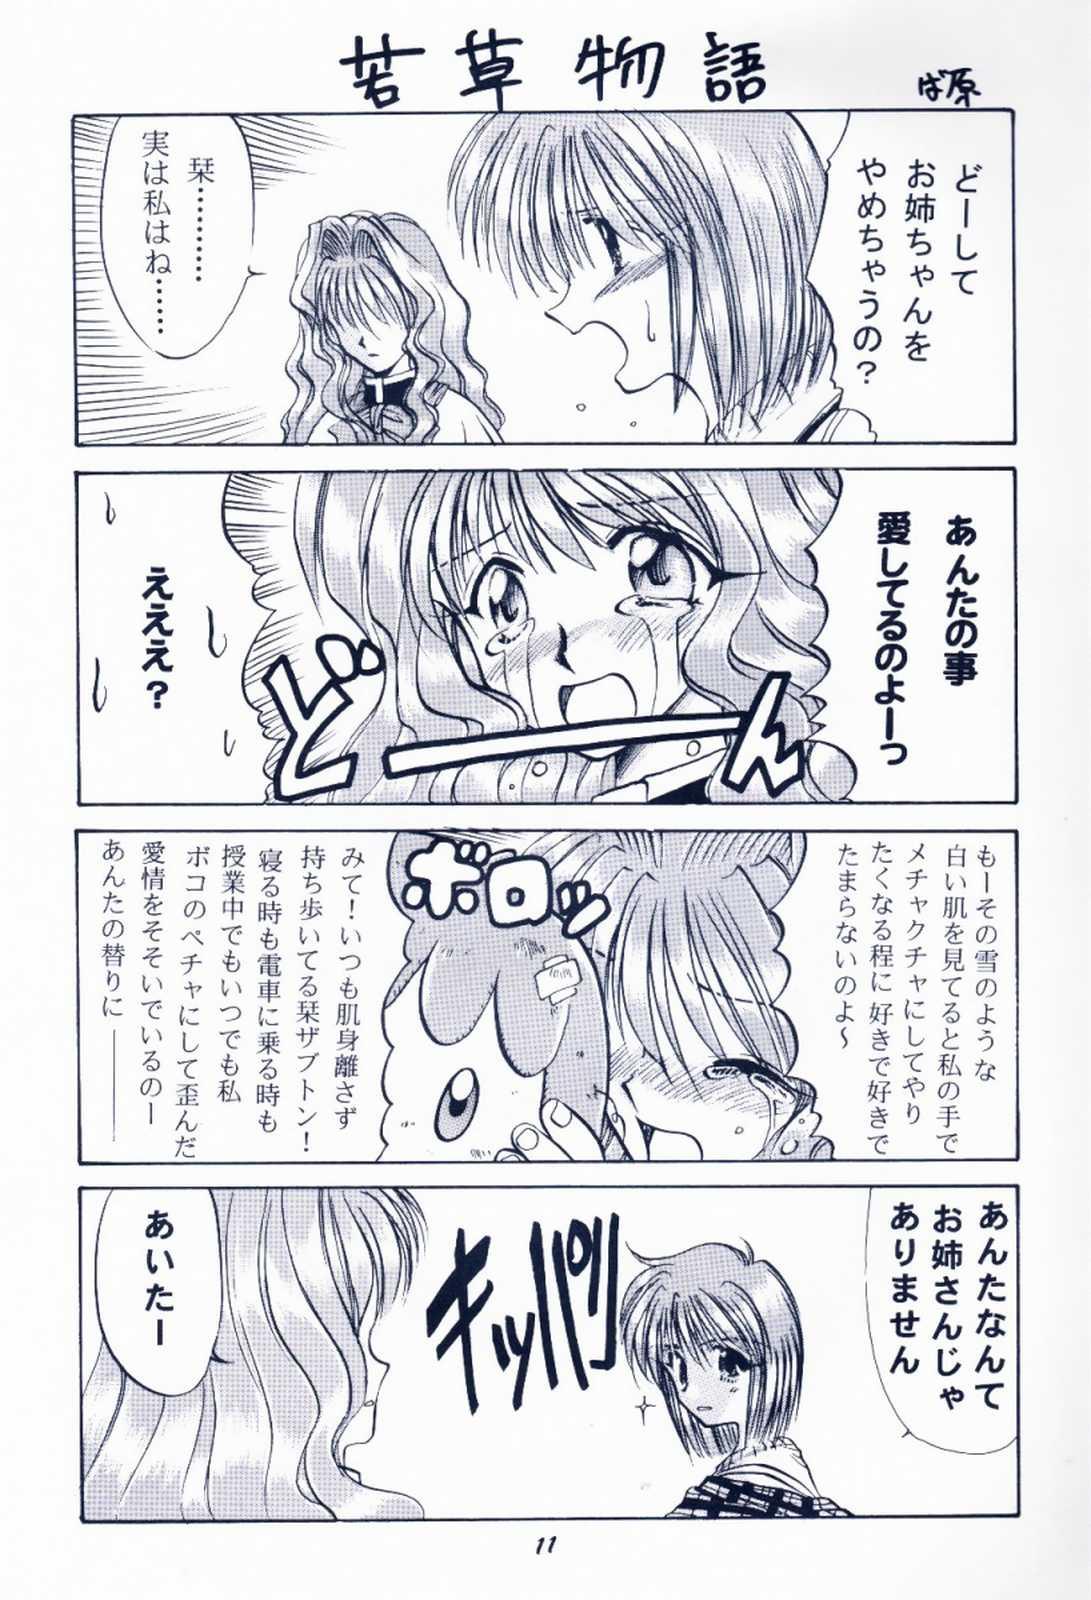 No Condom Maido Osawagaseshimasu 7 - Kanon Comic party Web - Page 10